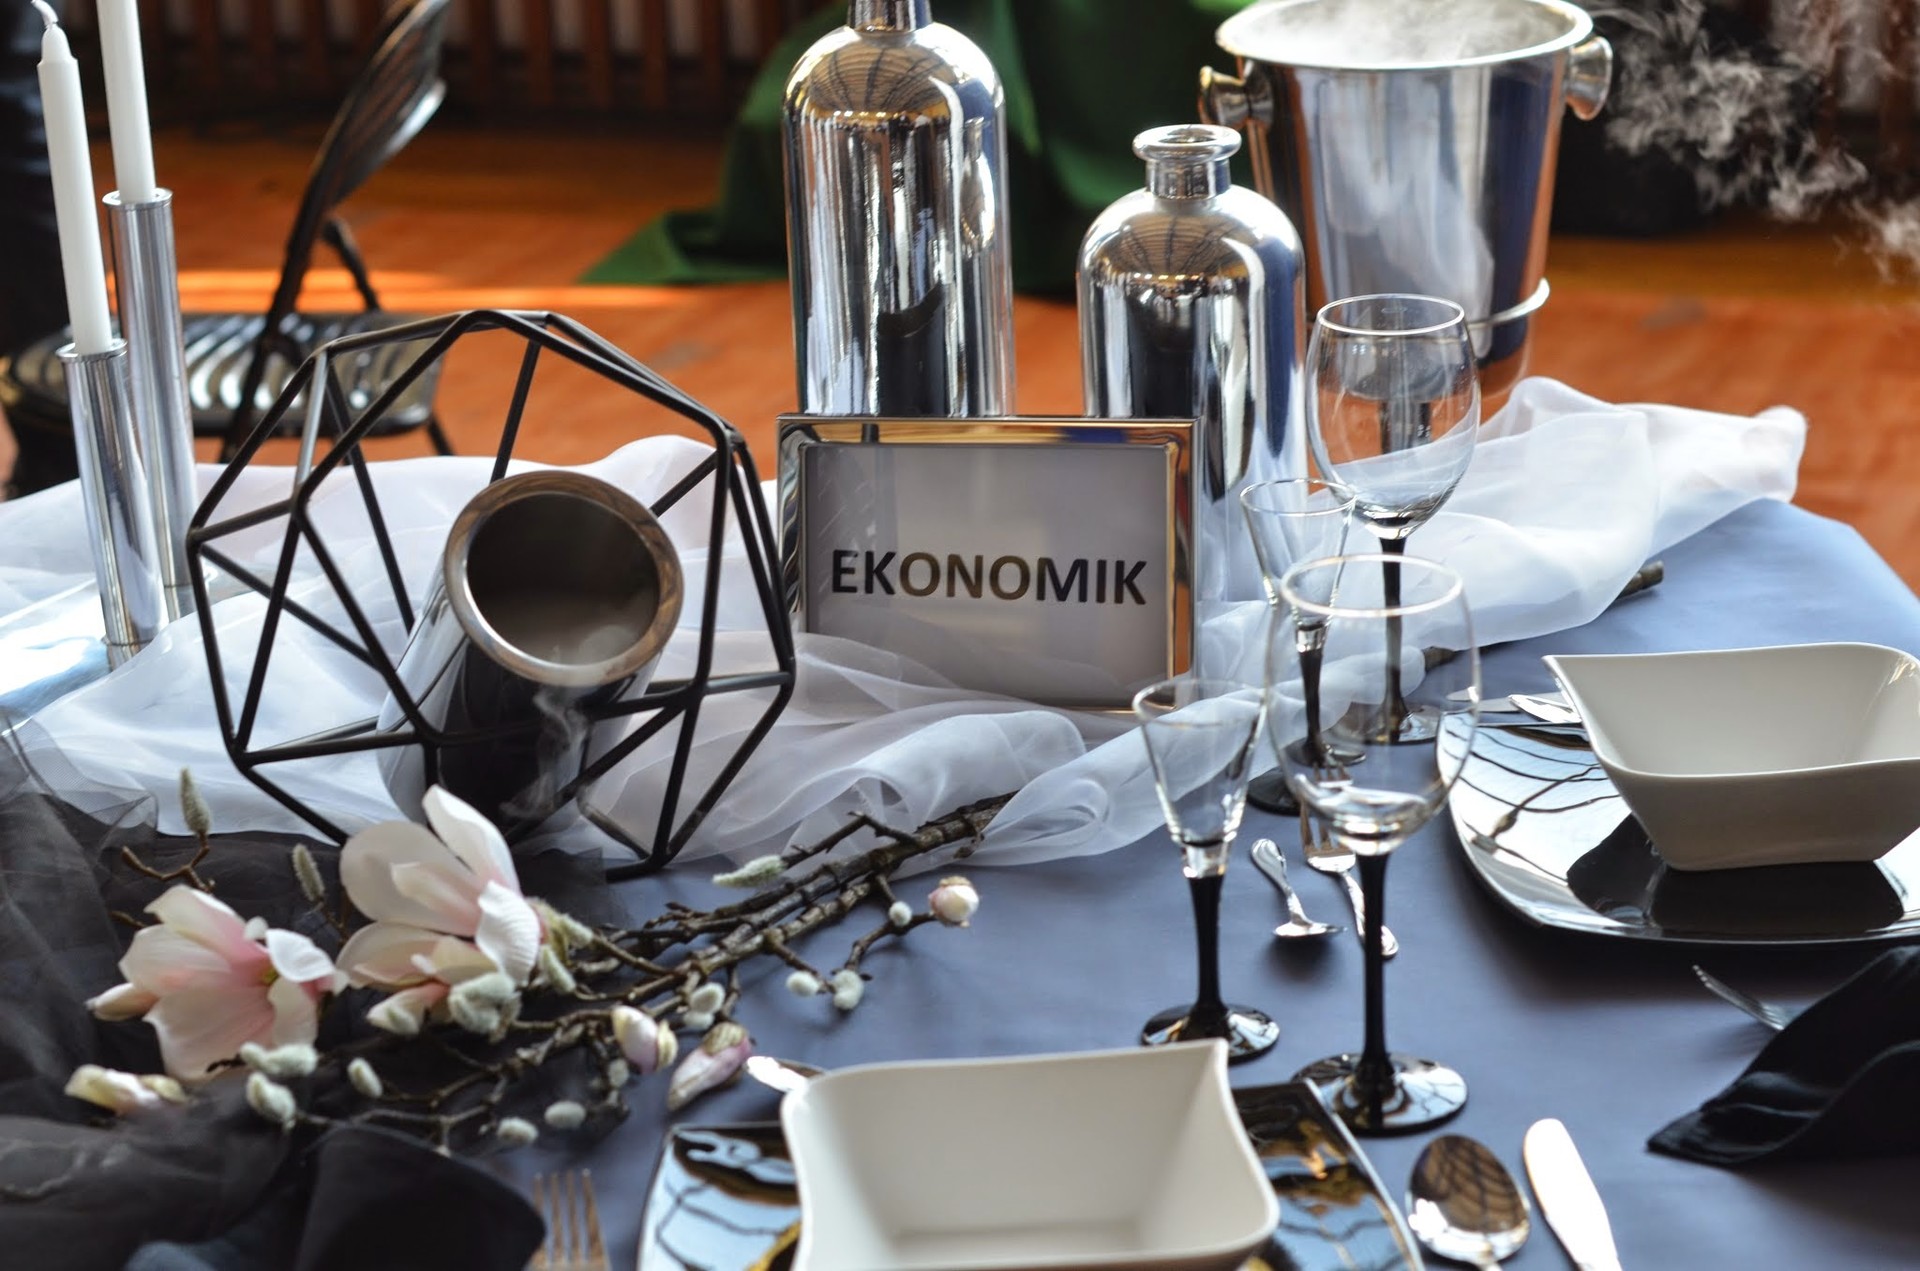 Stół z talerzami sztućcami oraz tabliczką Ekonomik